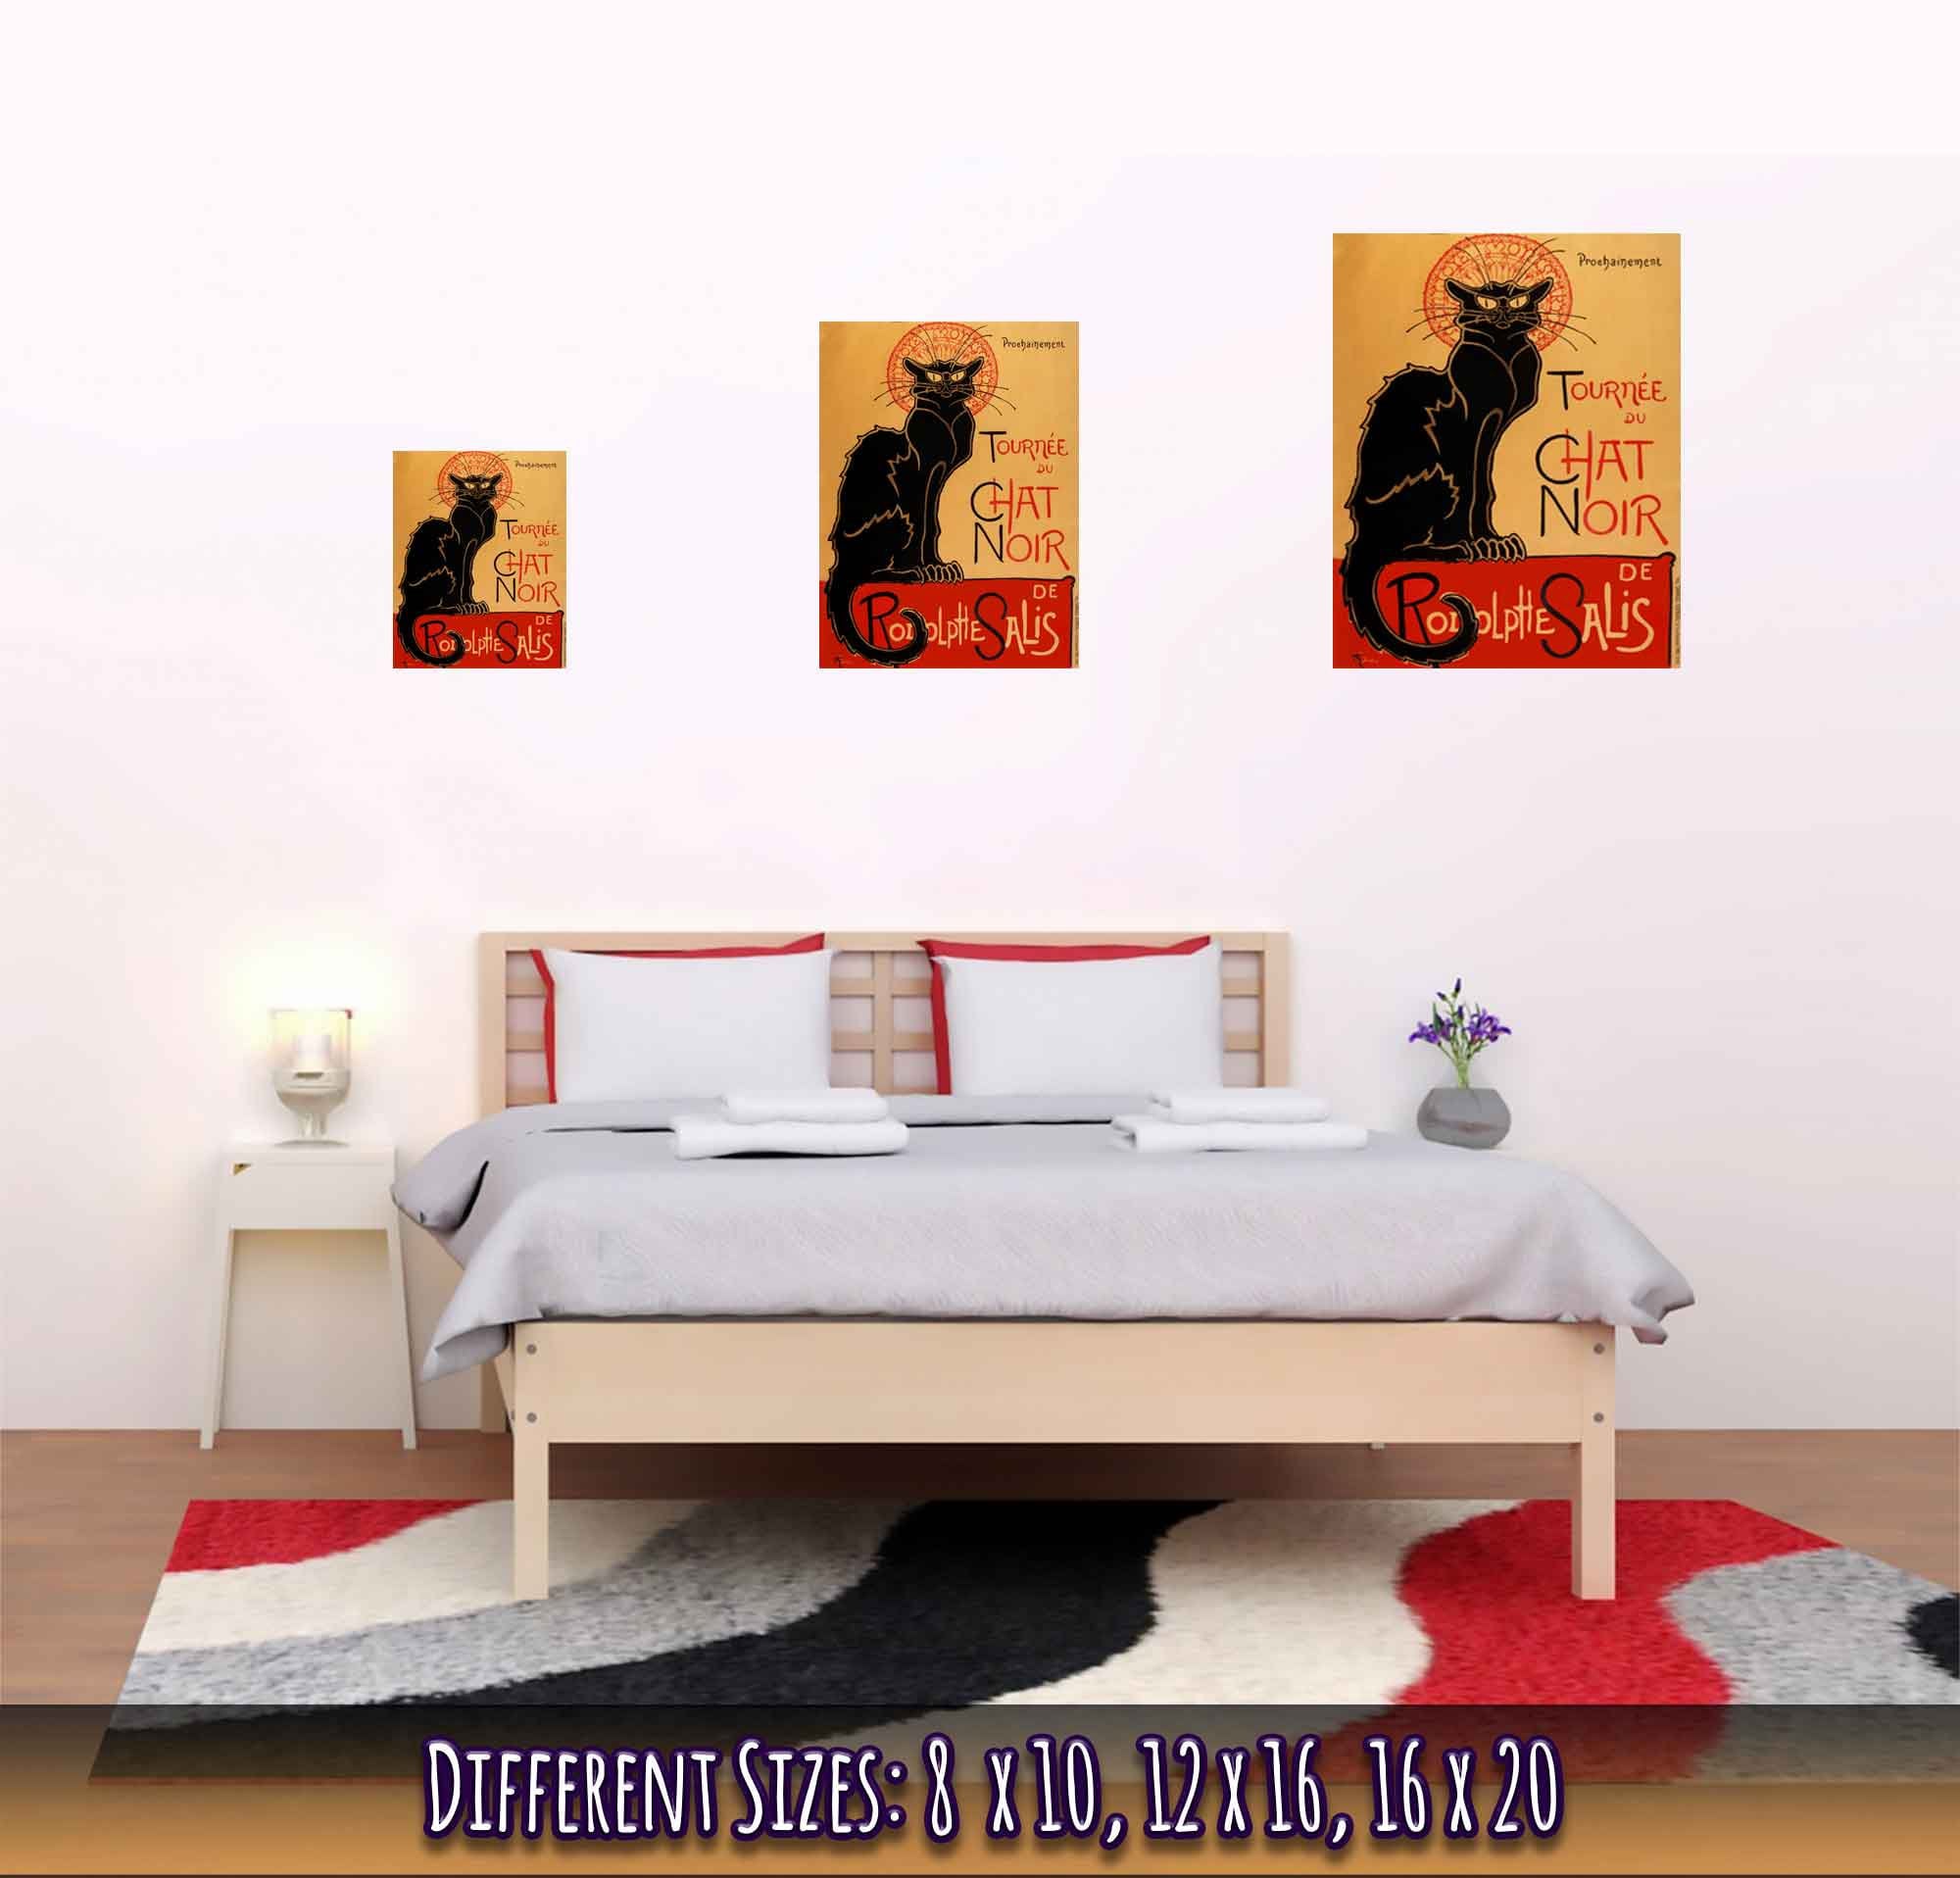 Le Chat Noir Print - Tournee Du Chat Noir - Le Chat Noir Cat Poster - Rodolp[He Salis 1896 - WallArtPrints4U